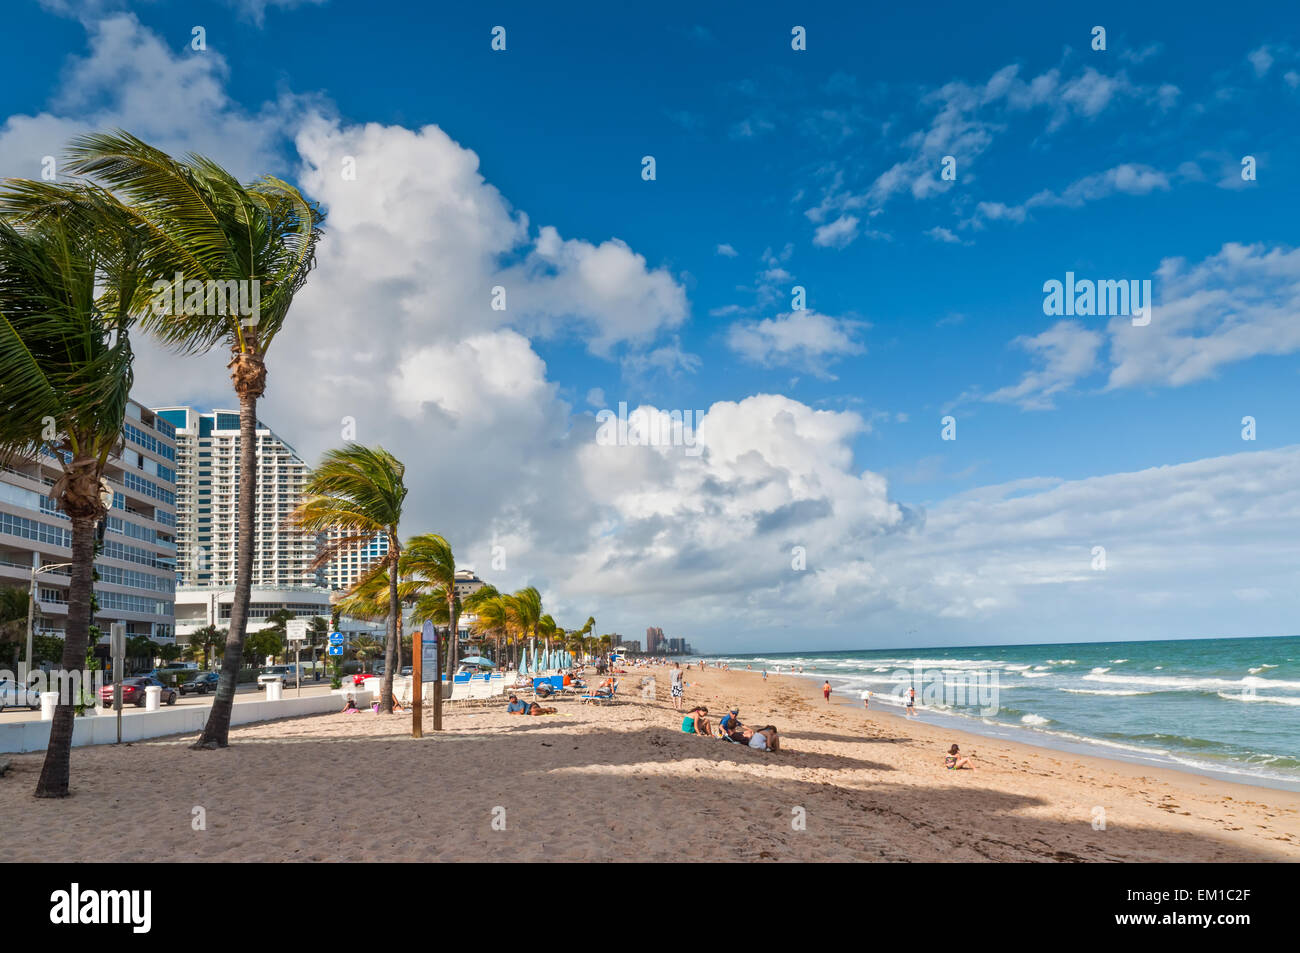 Vista de la playa Fort Lauderdale pública con las personas de vacaciones de otoño vacaciones, disfrutar del cálido clima soleado en la arena Foto de stock